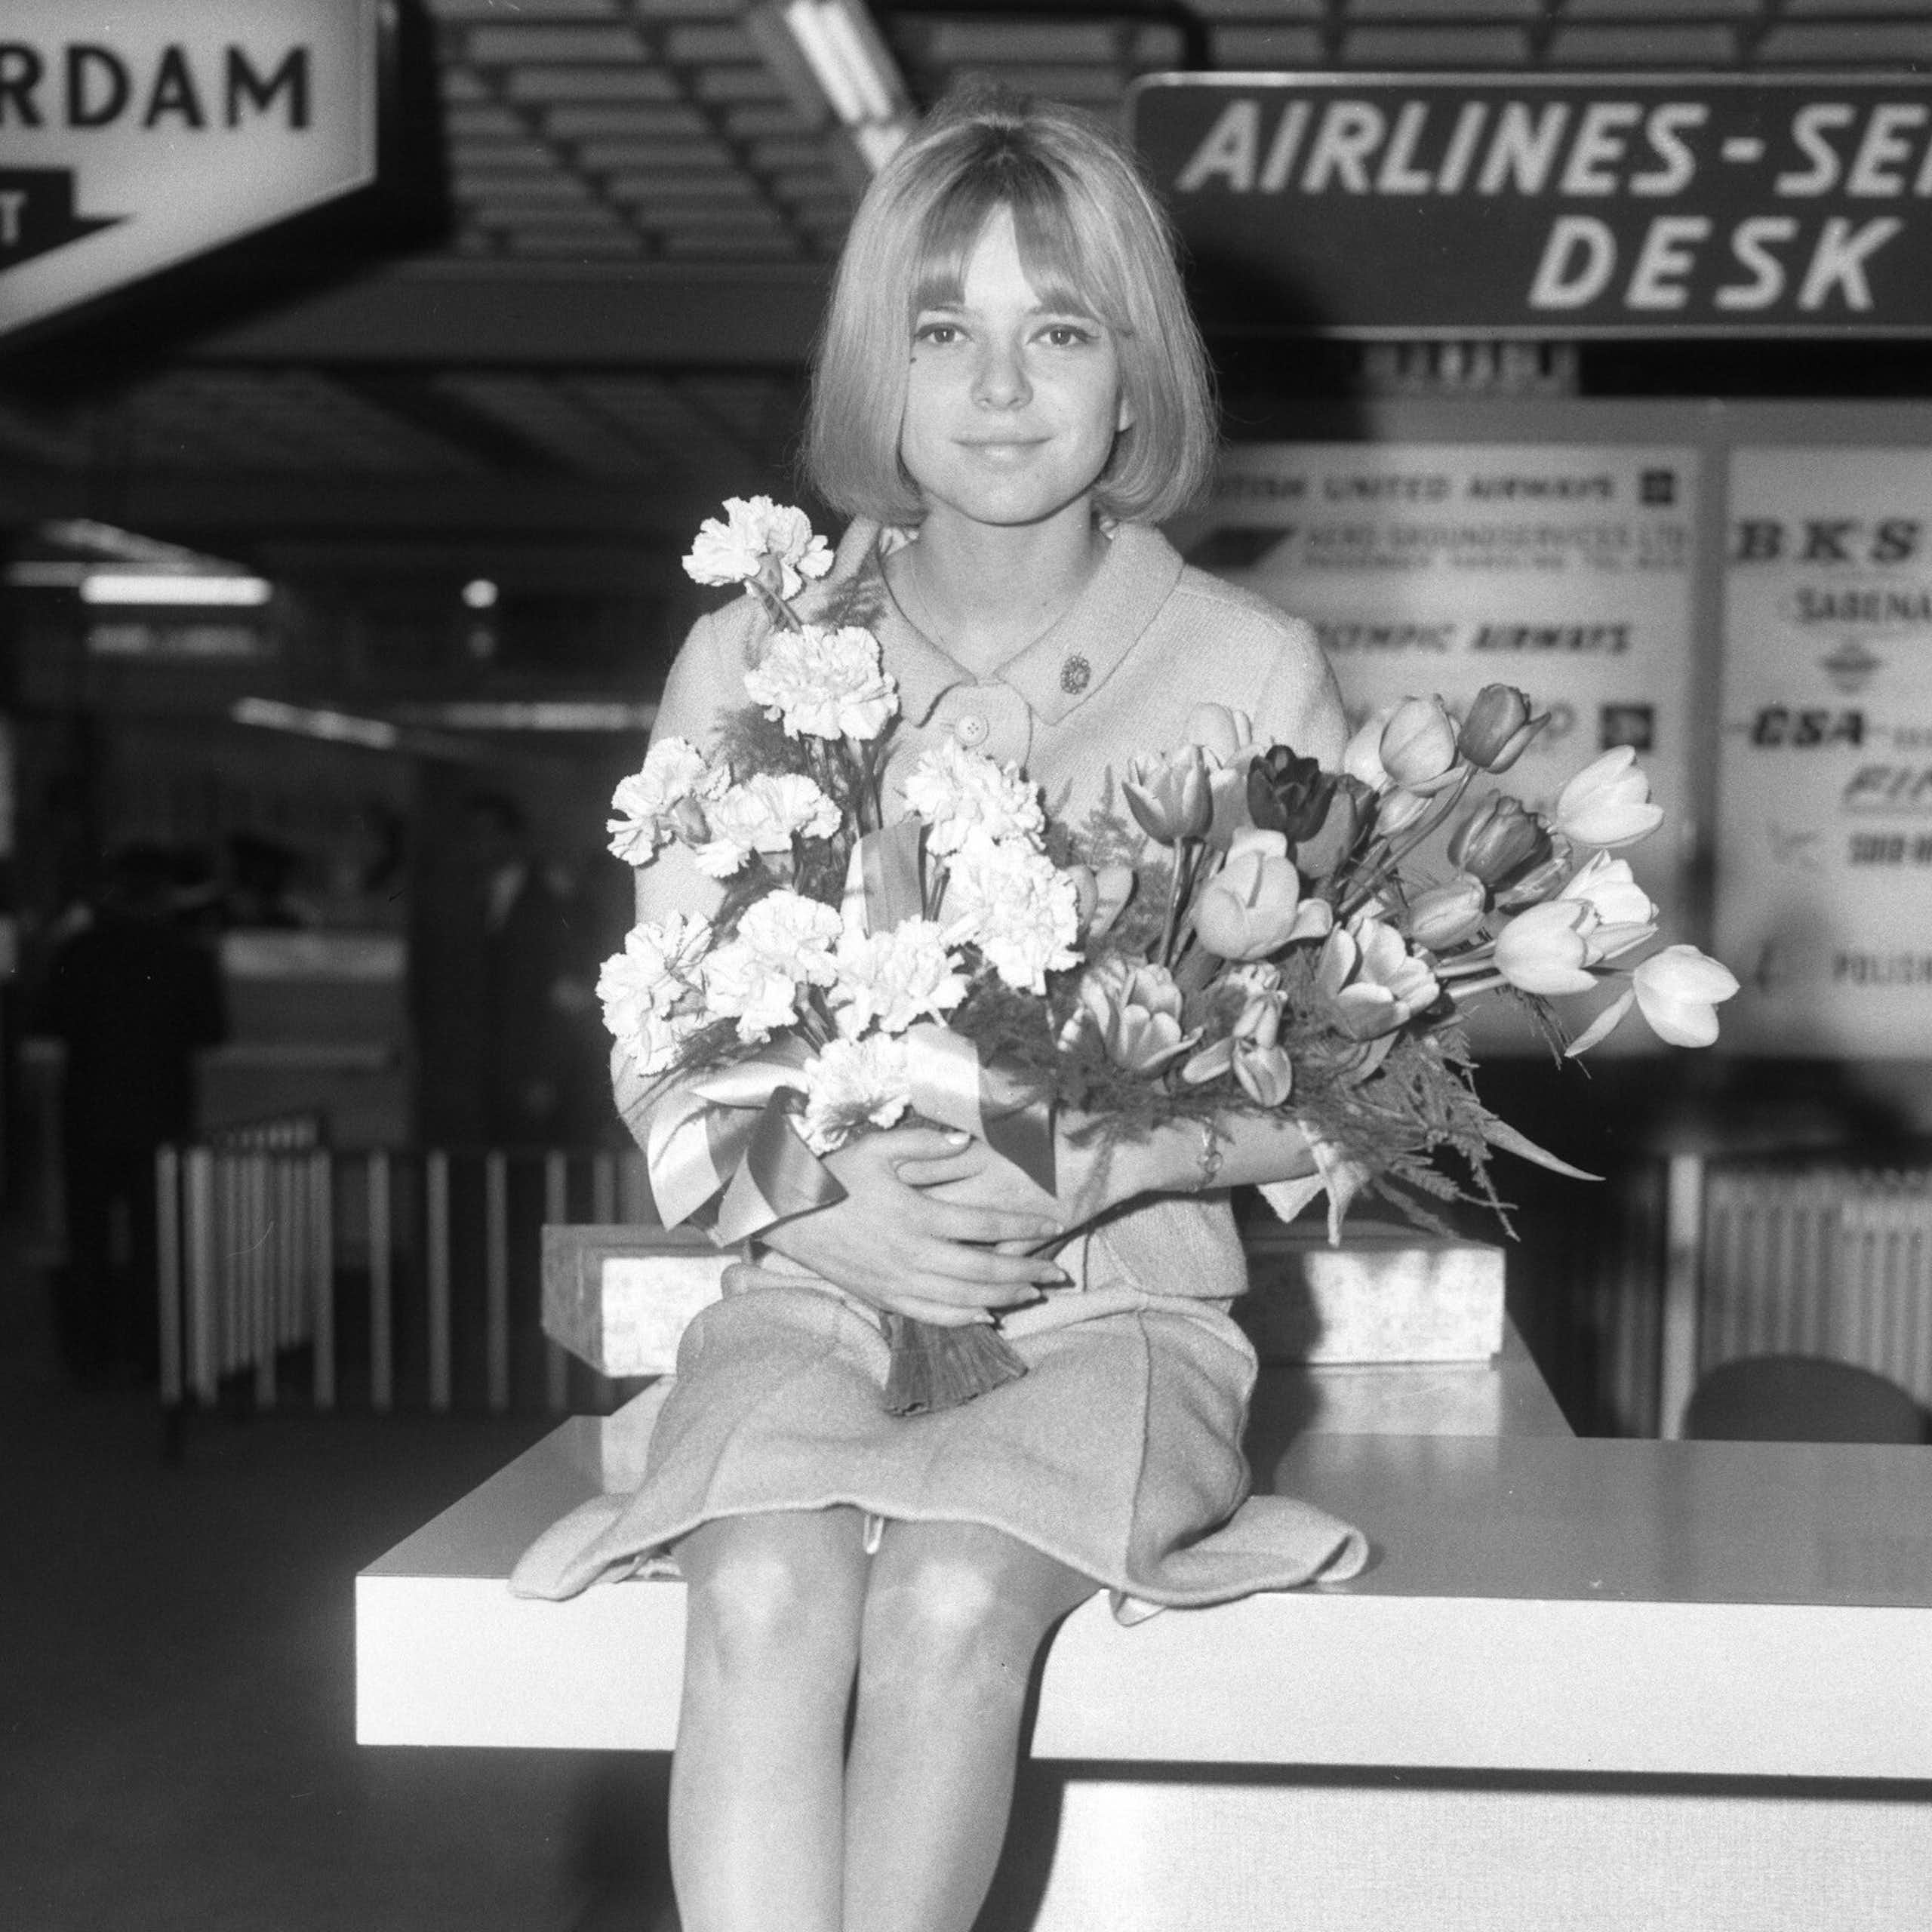 Una mujer joven sentada con traje chaqueta sobre un mostrador y un ramo de flores en las manos.